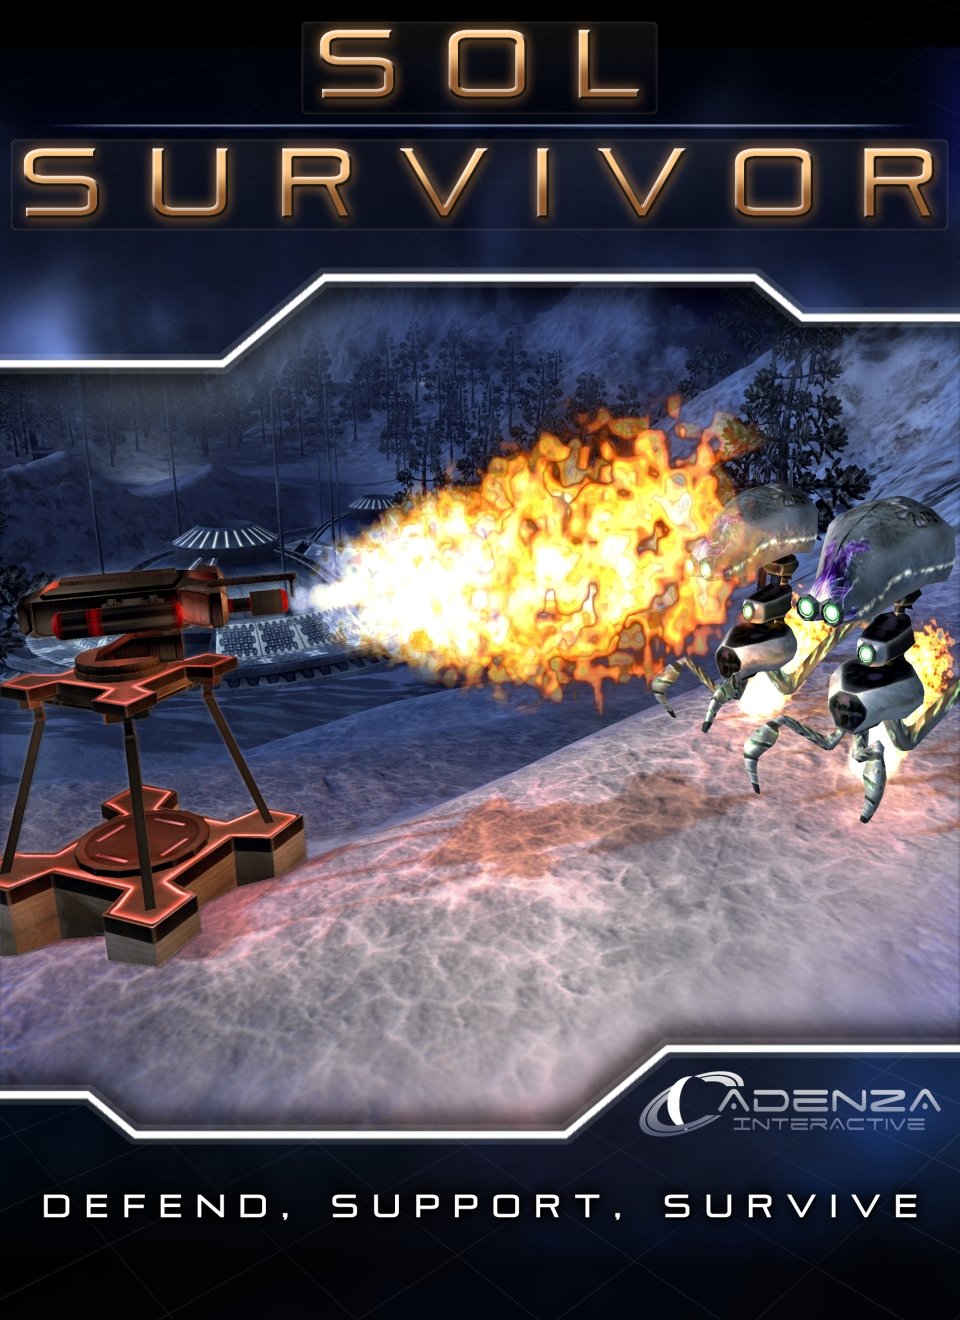 Image of Sol Survivor